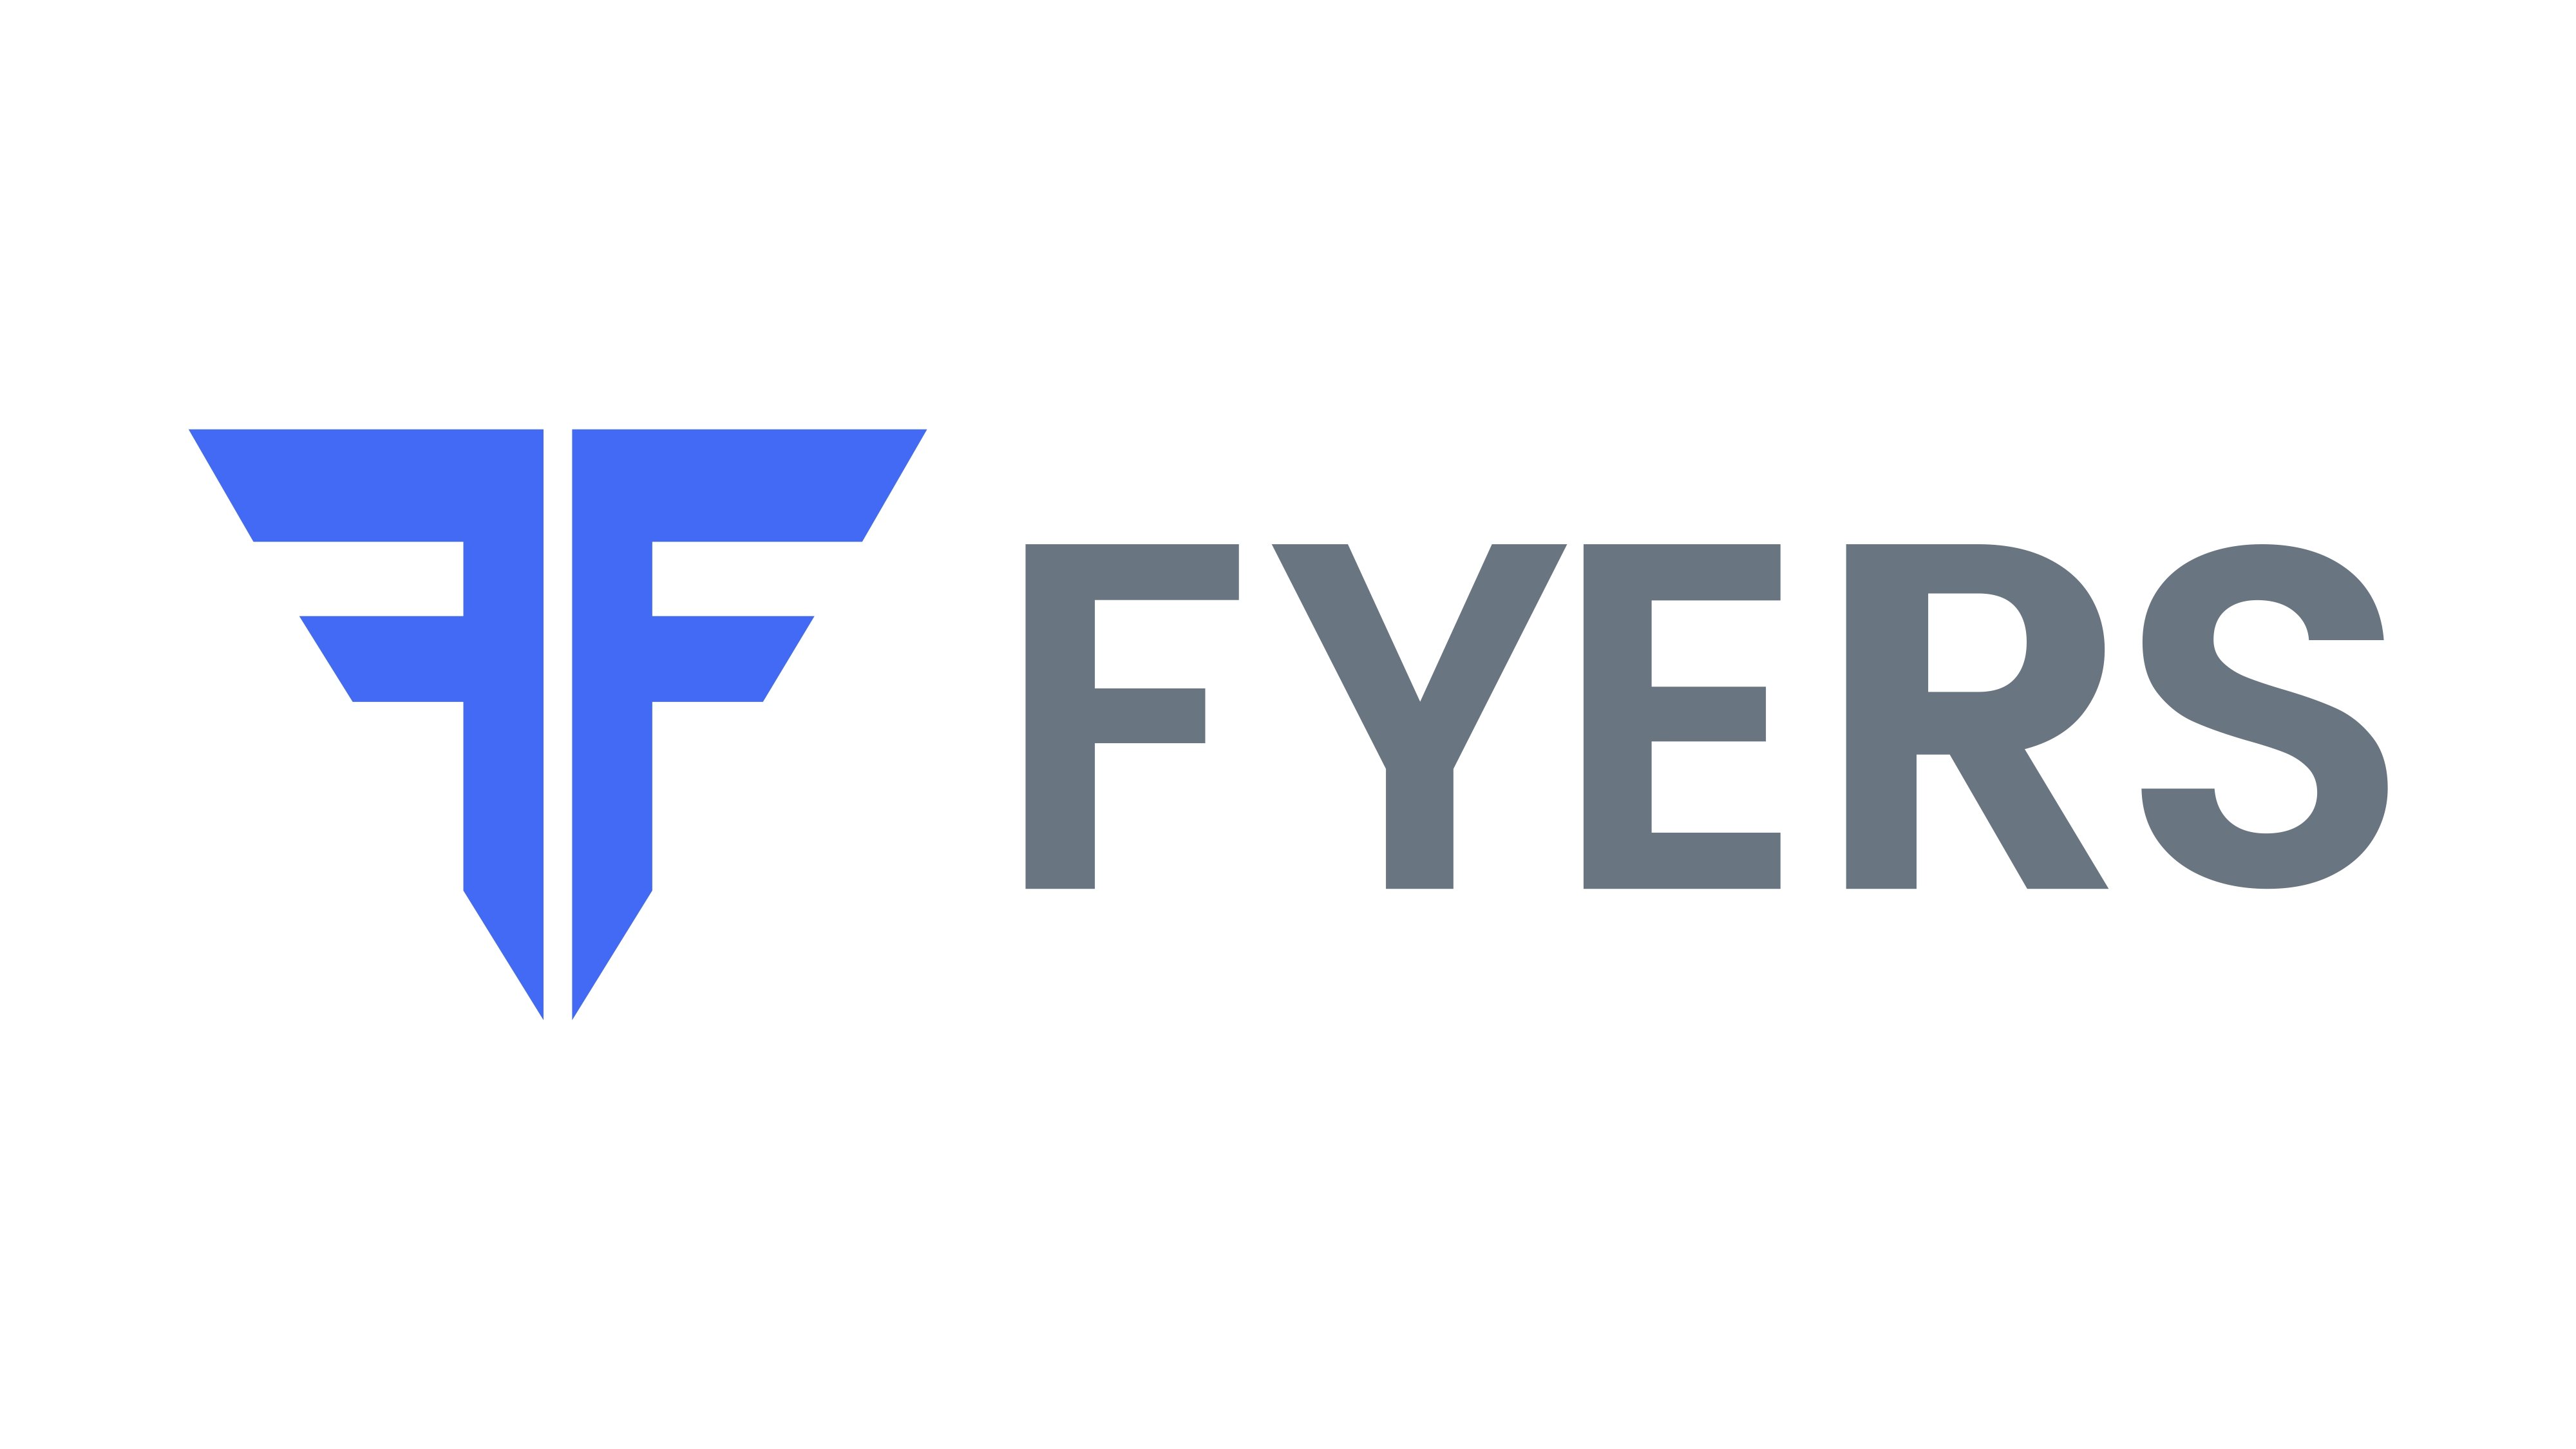 Fyers Share Broker Logo